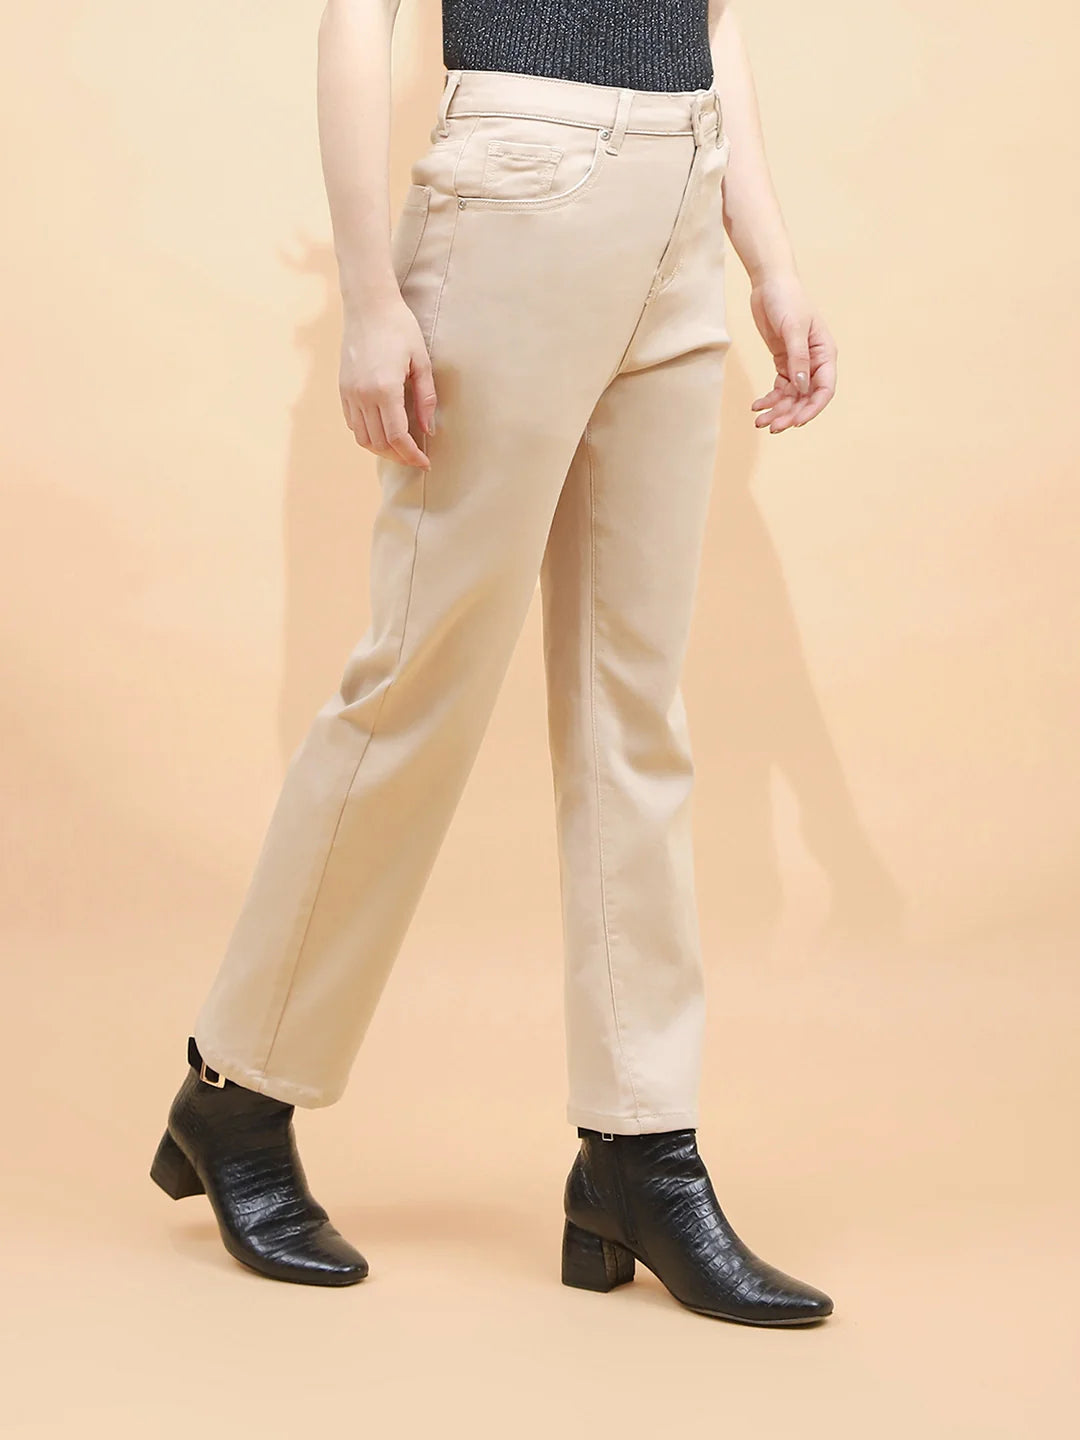 Fawn Cotton Blend Regular Fit Trouser For Women